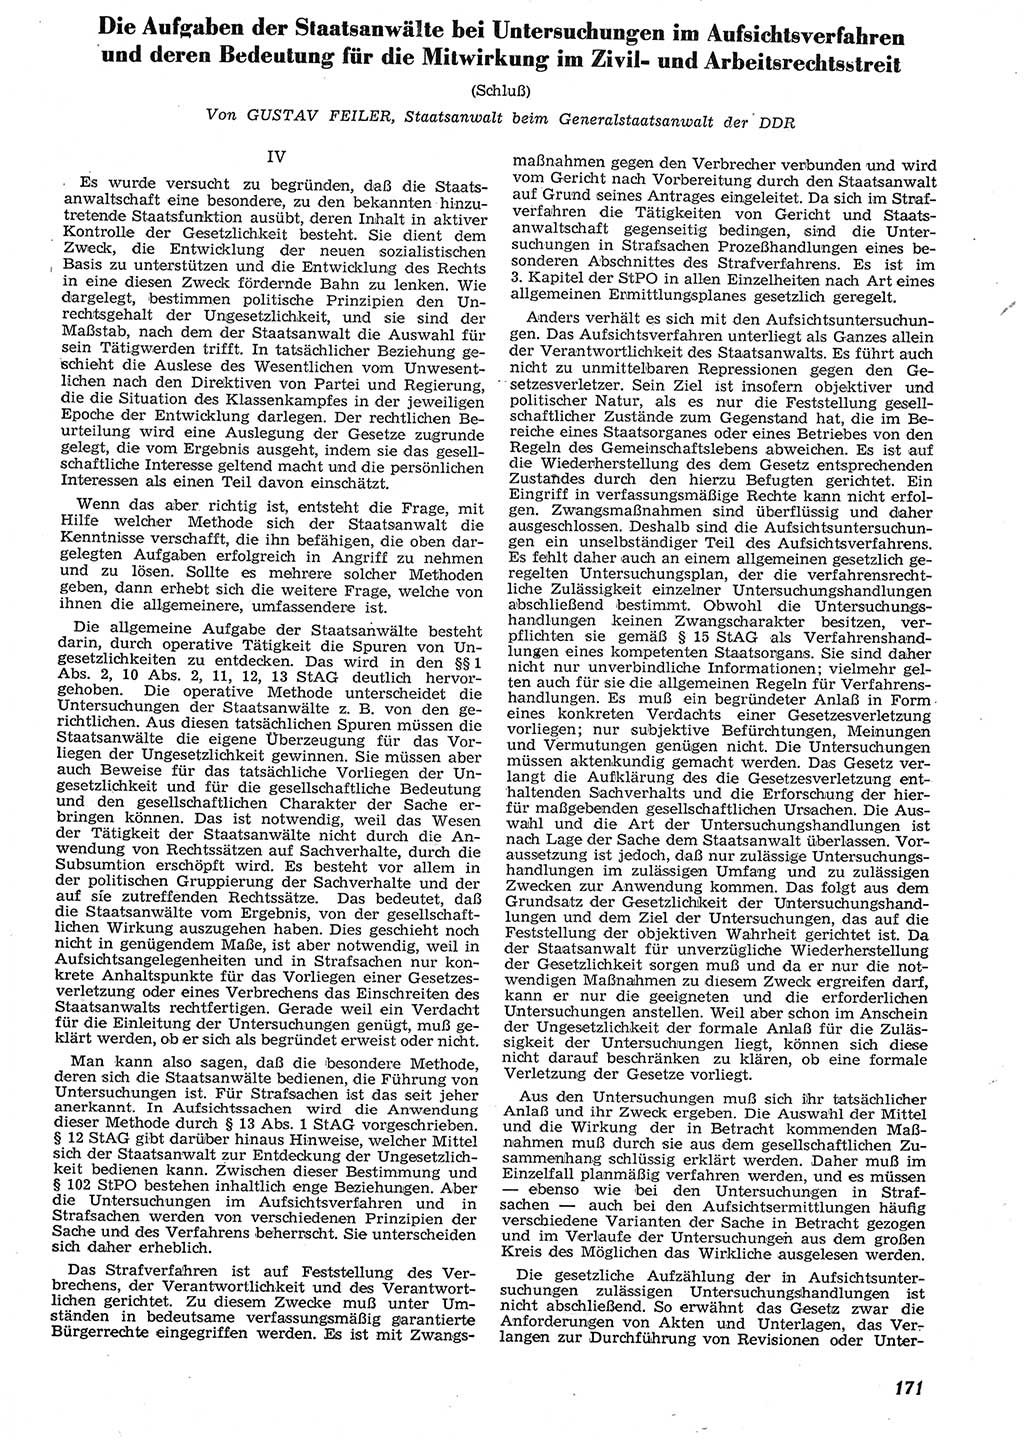 Neue Justiz (NJ), Zeitschrift für Recht und Rechtswissenschaft [Deutsche Demokratische Republik (DDR)], 10. Jahrgang 1956, Seite 171 (NJ DDR 1956, S. 171)